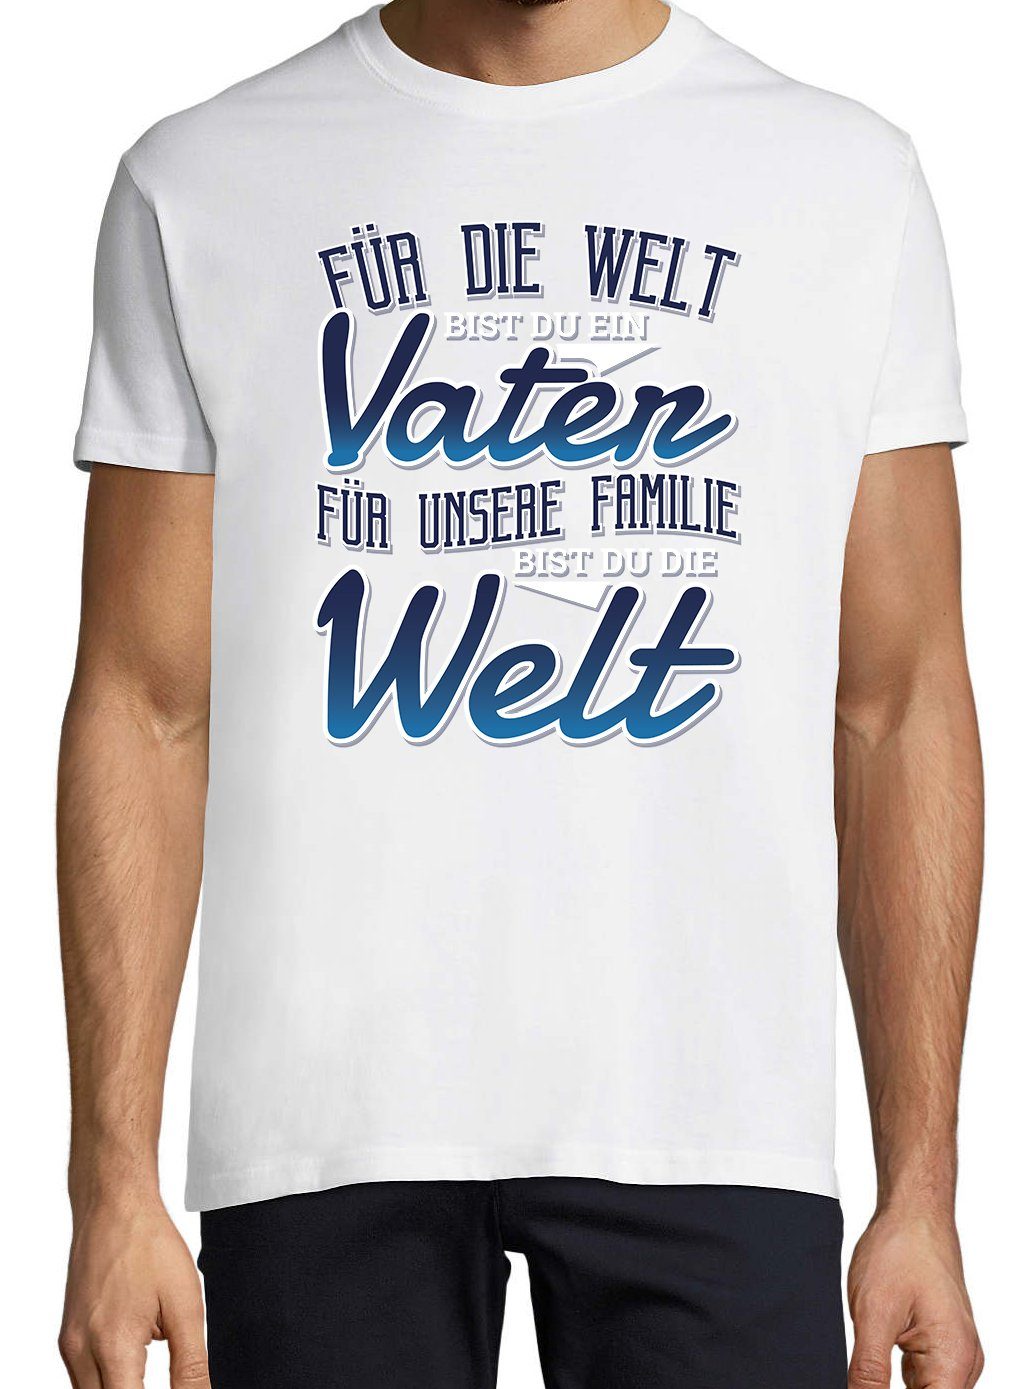 Youth Designz Print-Shirt Welt" Bist "Für T-Shirt Die Spruch lustigem Du Familie Weiss Herren mit Unsere